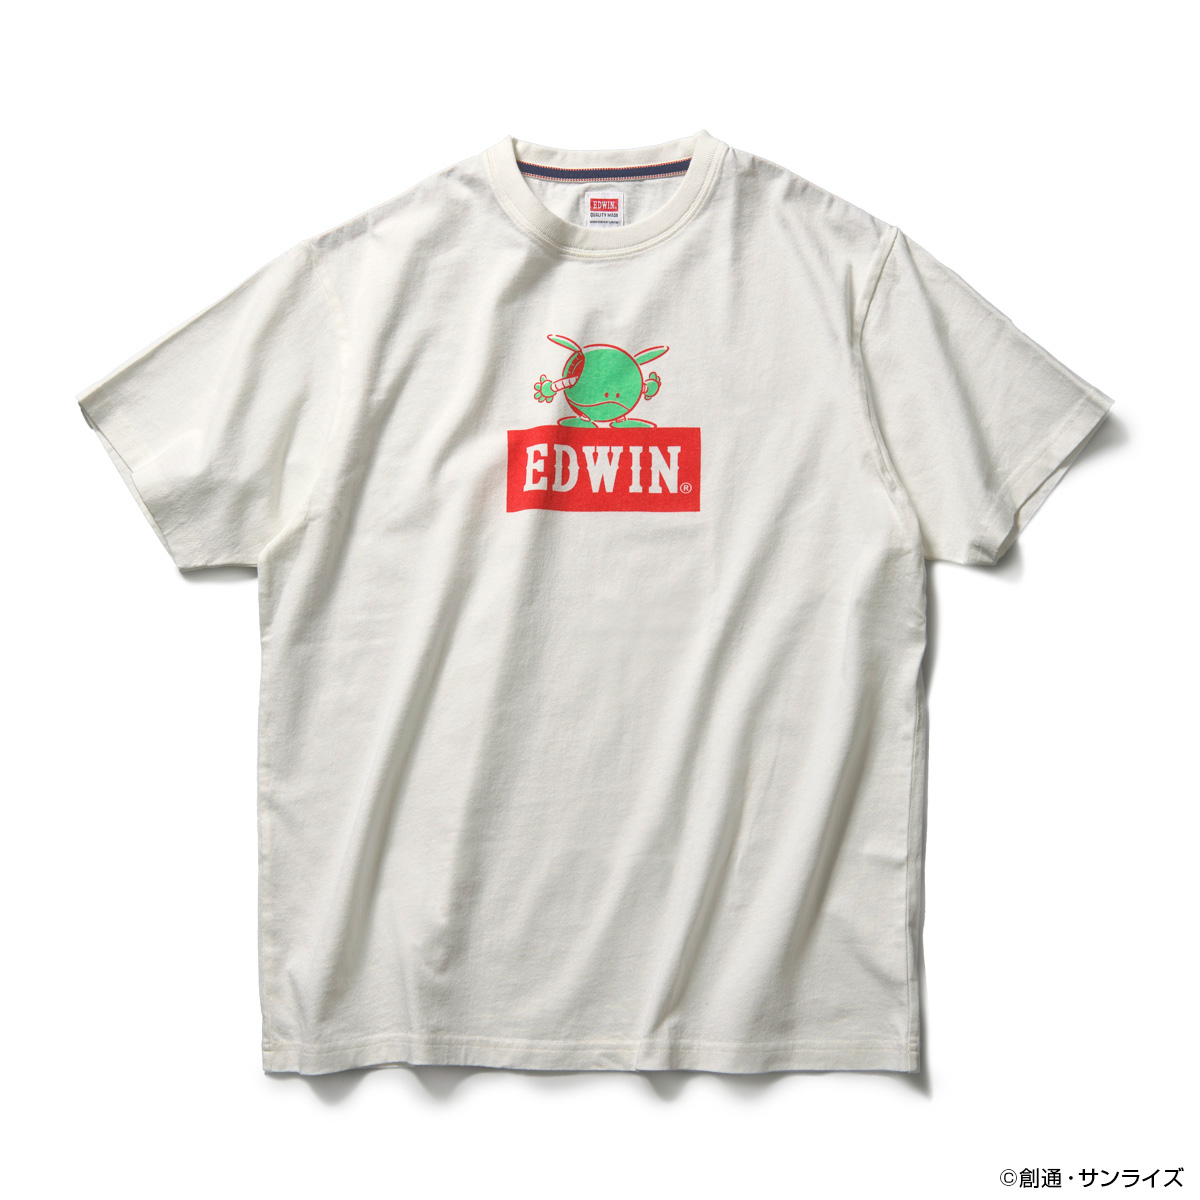 日本を代表するジーンズメーカー「EDWIN」と『機動戦士ガンダム』コラボレーション!新作アイテム、デニム生地のハロも登場!